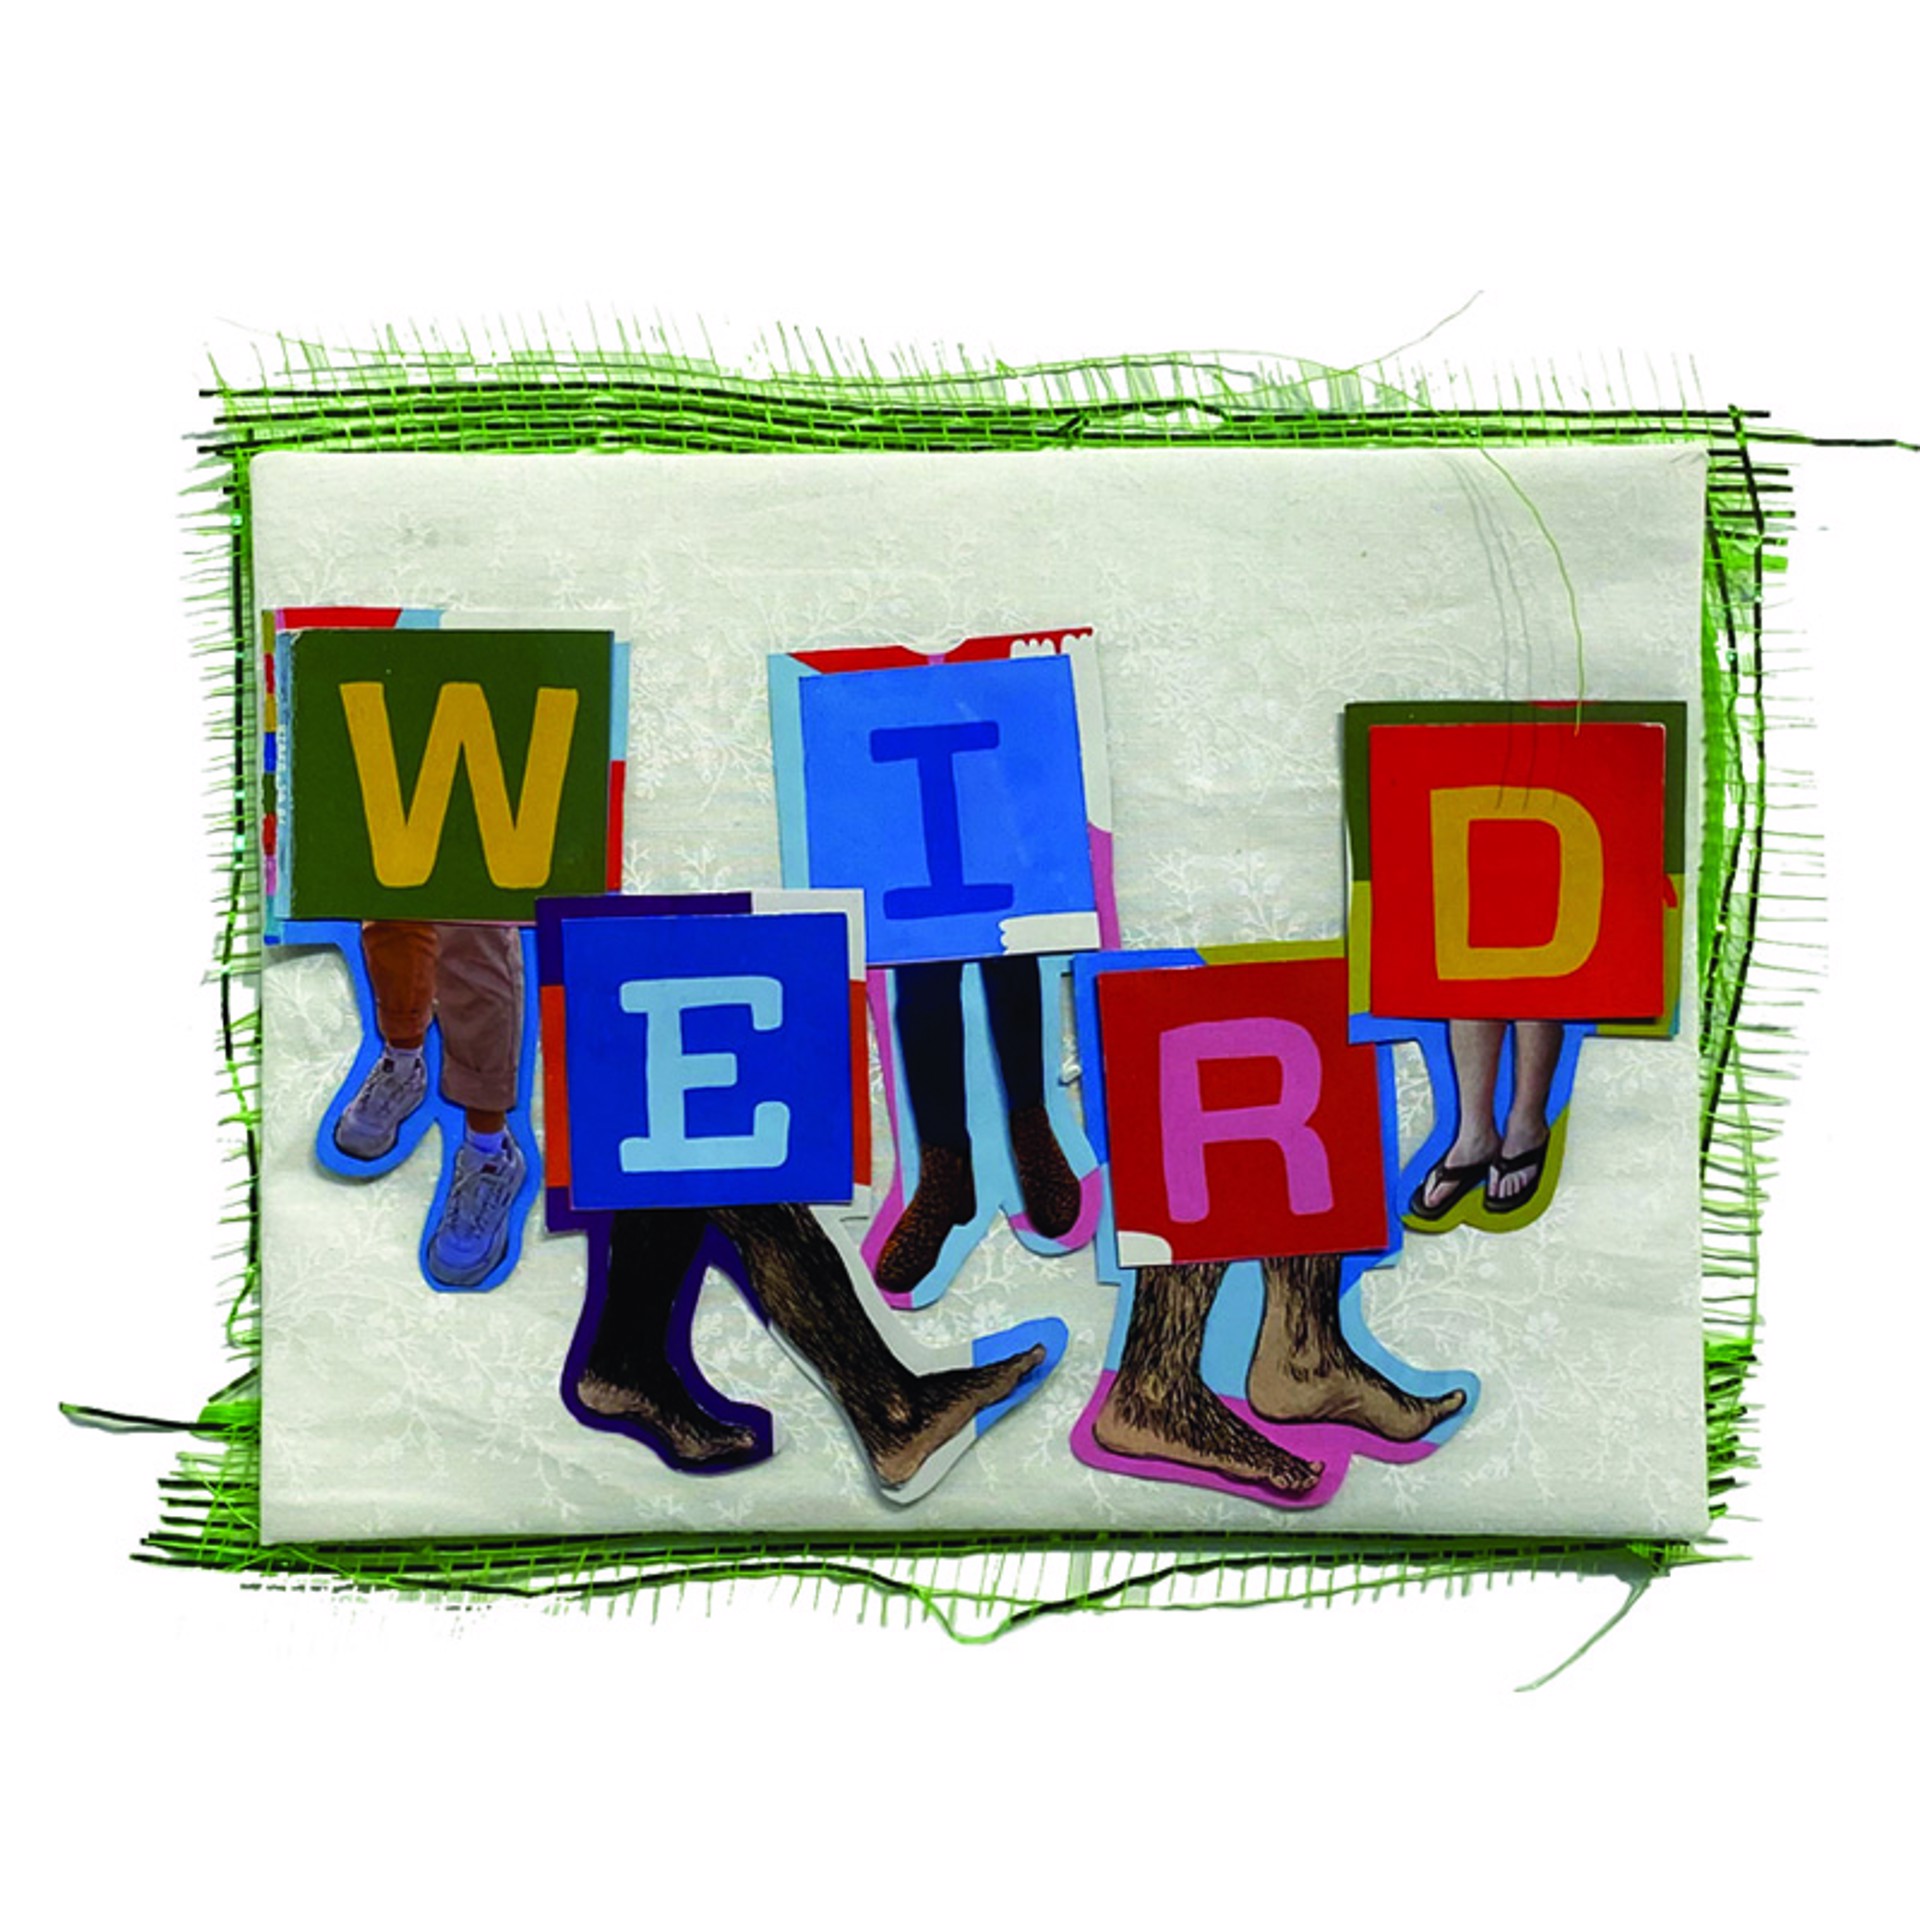 We're All Wired a Bit Weird by Laura Dunbar